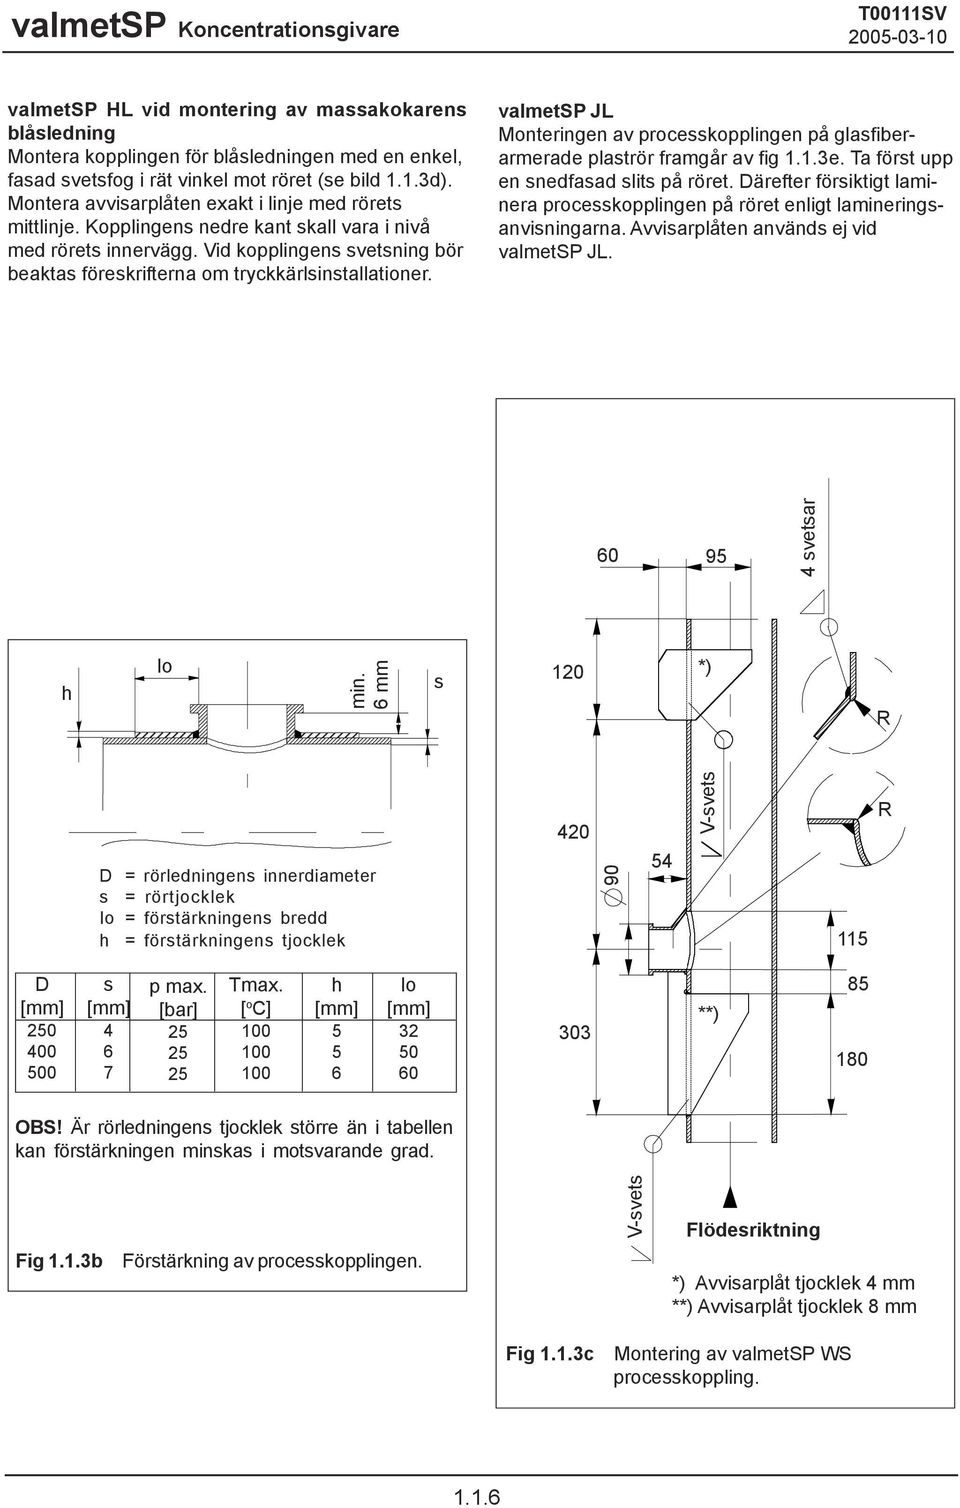 Vid kopplingens svetsning bör beaktas föreskrifterna om tryckkärlsinstallationer. valmetsp JL Monteringen av processkopplingen på glasfiberarmerade plaströr framgår av fig 1.1.3e.